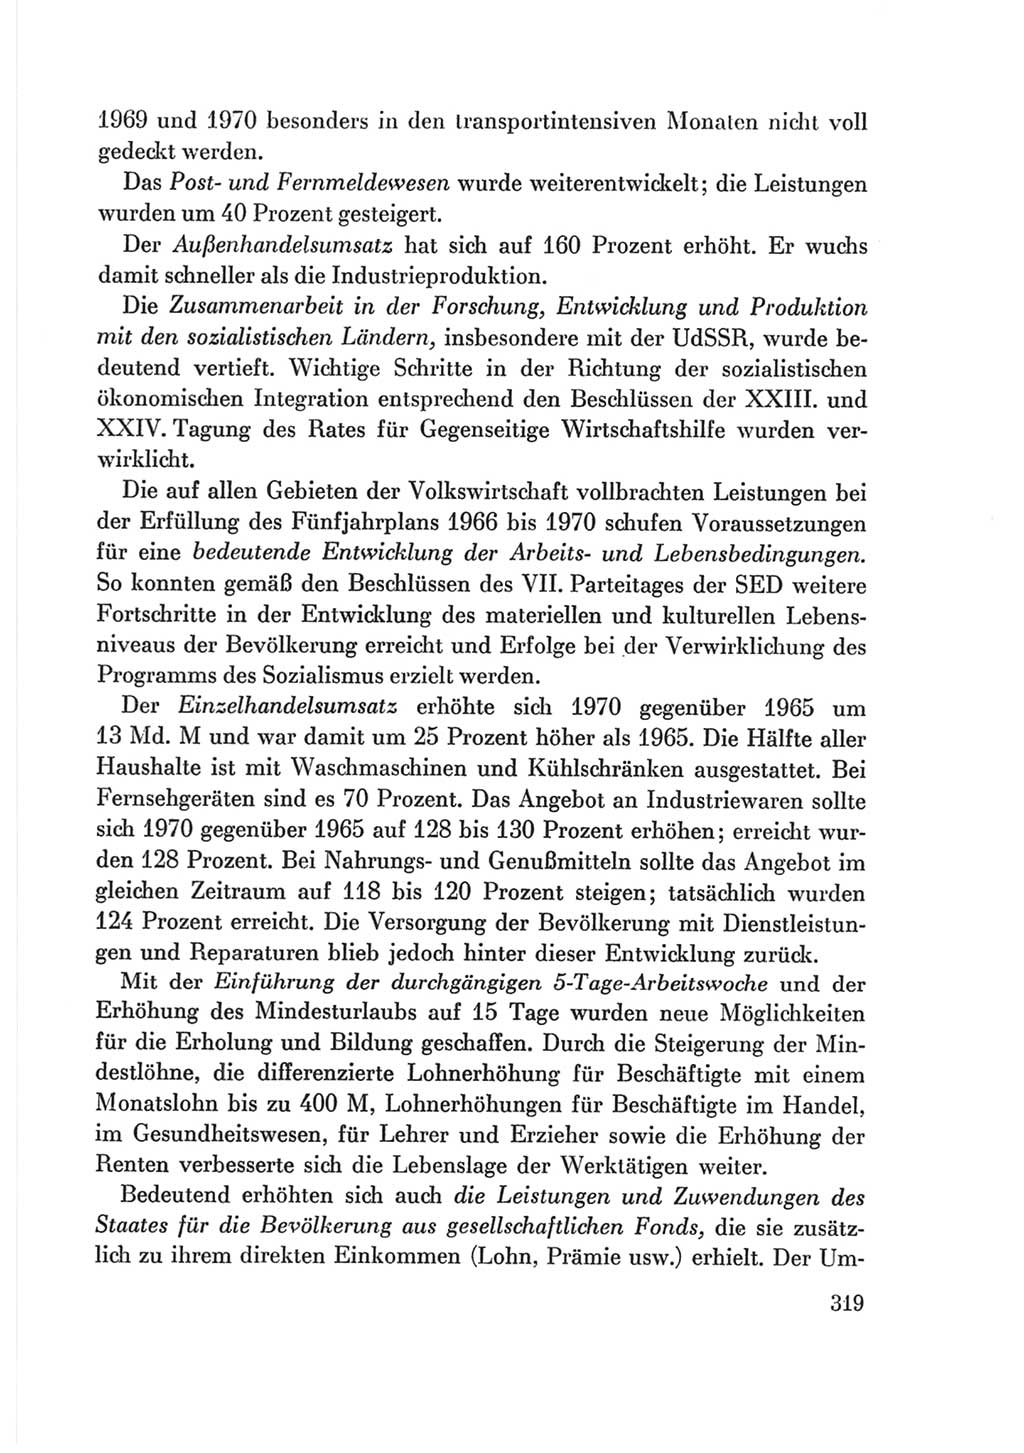 Protokoll der Verhandlungen des Ⅷ. Parteitages der Sozialistischen Einheitspartei Deutschlands (SED) [Deutsche Demokratische Republik (DDR)] 1971, Band 2, Seite 319 (Prot. Verh. Ⅷ. PT SED DDR 1971, Bd. 2, S. 319)